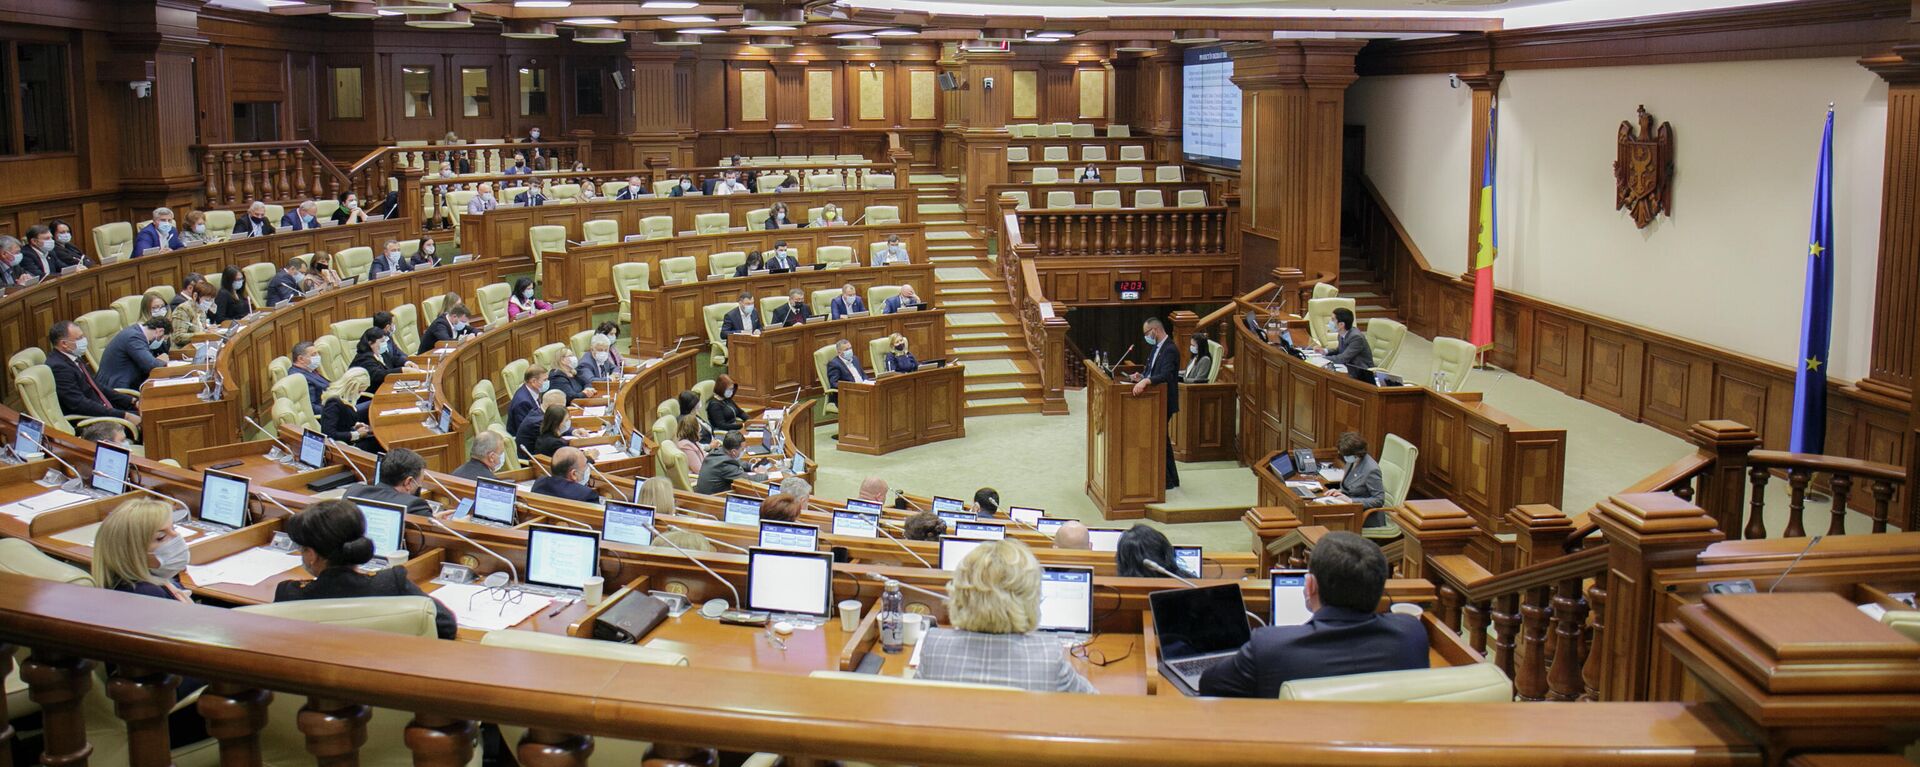 Заседание парламента Молдовы - Sputnik Молдова, 1920, 03.11.2021